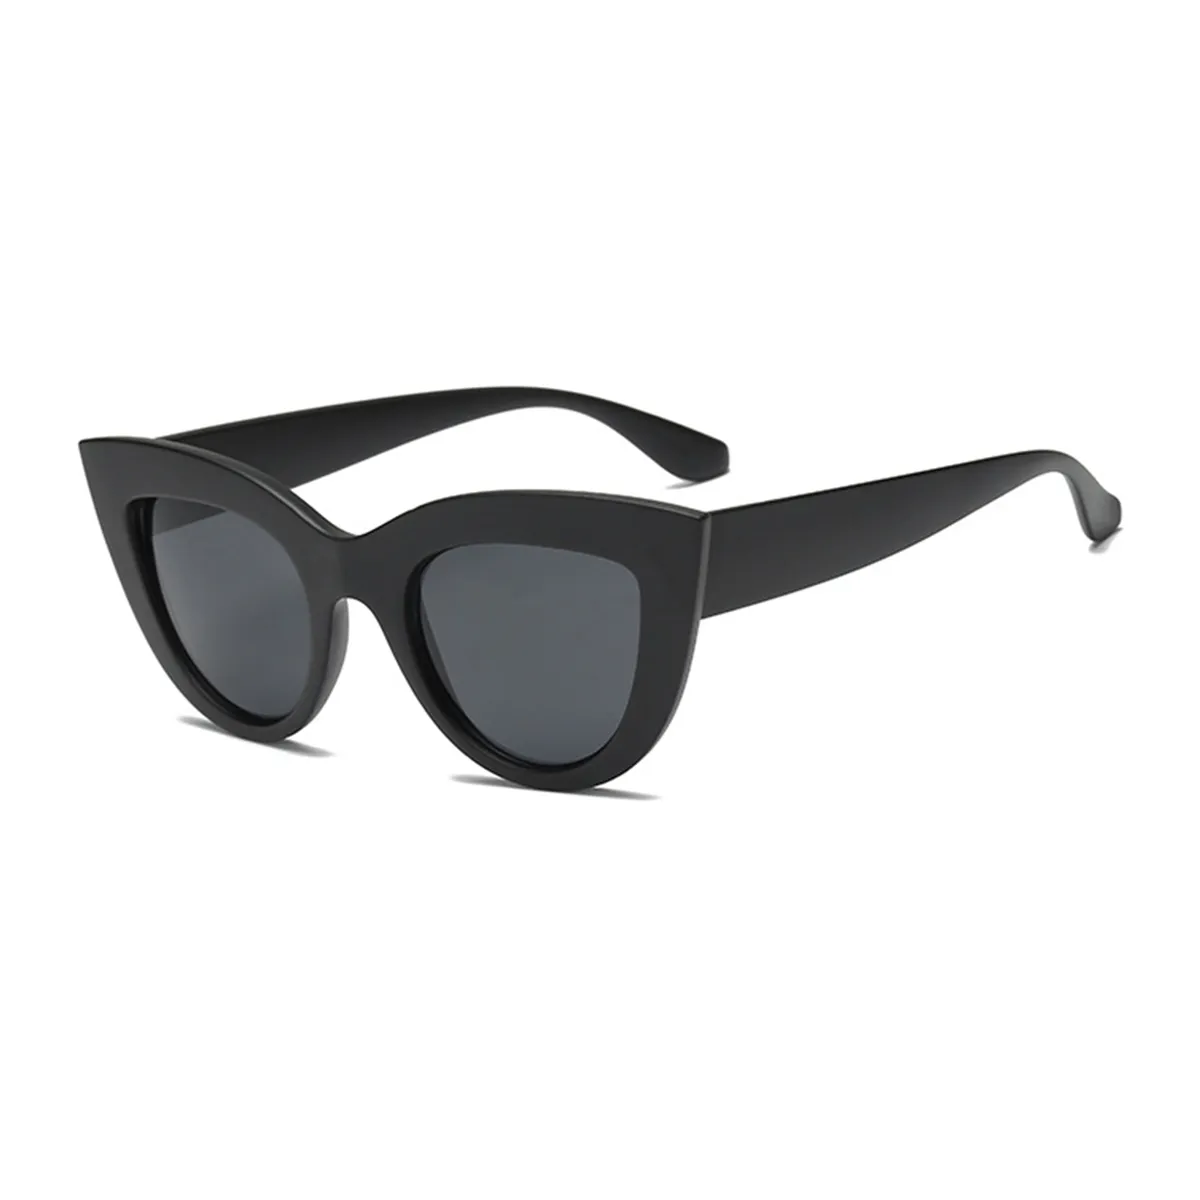 Cat-eye - Cat-eye Black Sunglasses for Women